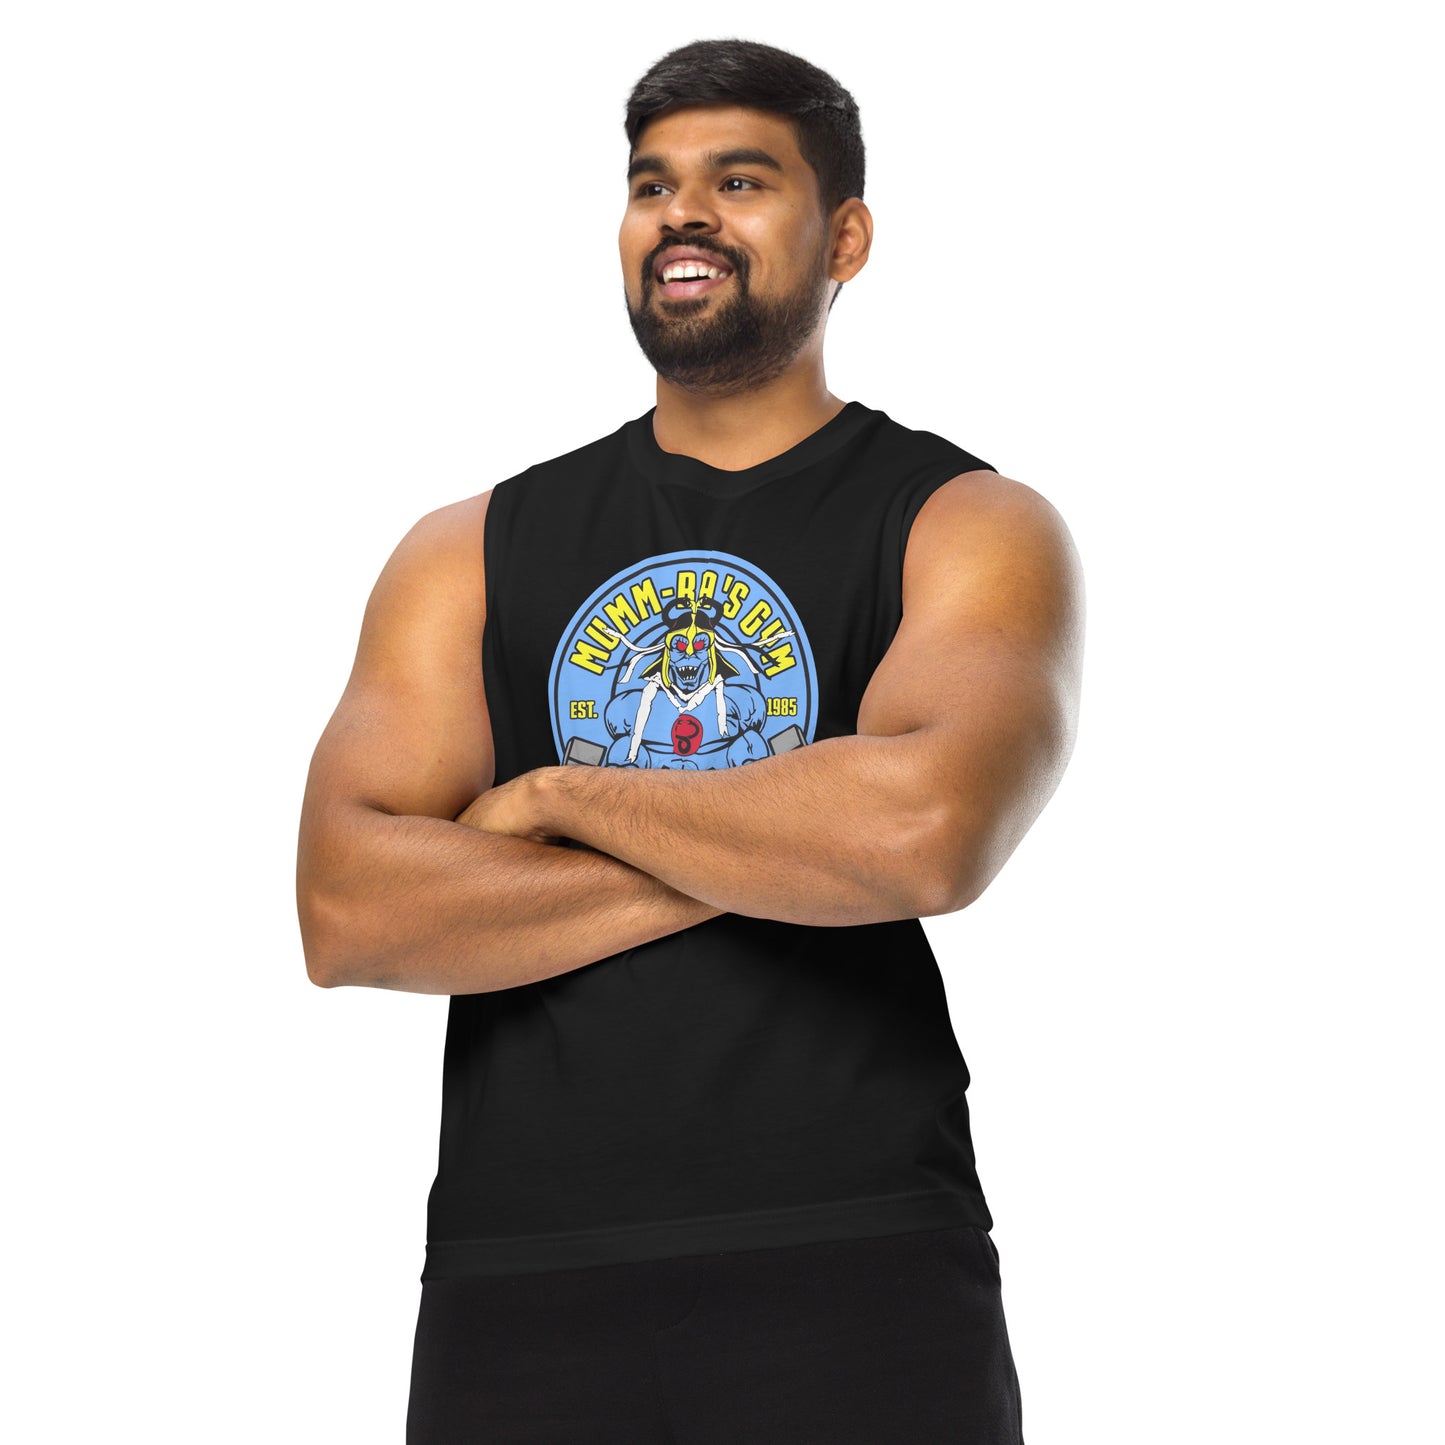 Camiseta sin mangas perfecta para entrenar, Camiseta Mumm- Ra Gym comprala en línea y experimenta el mejor servicio al cliente.